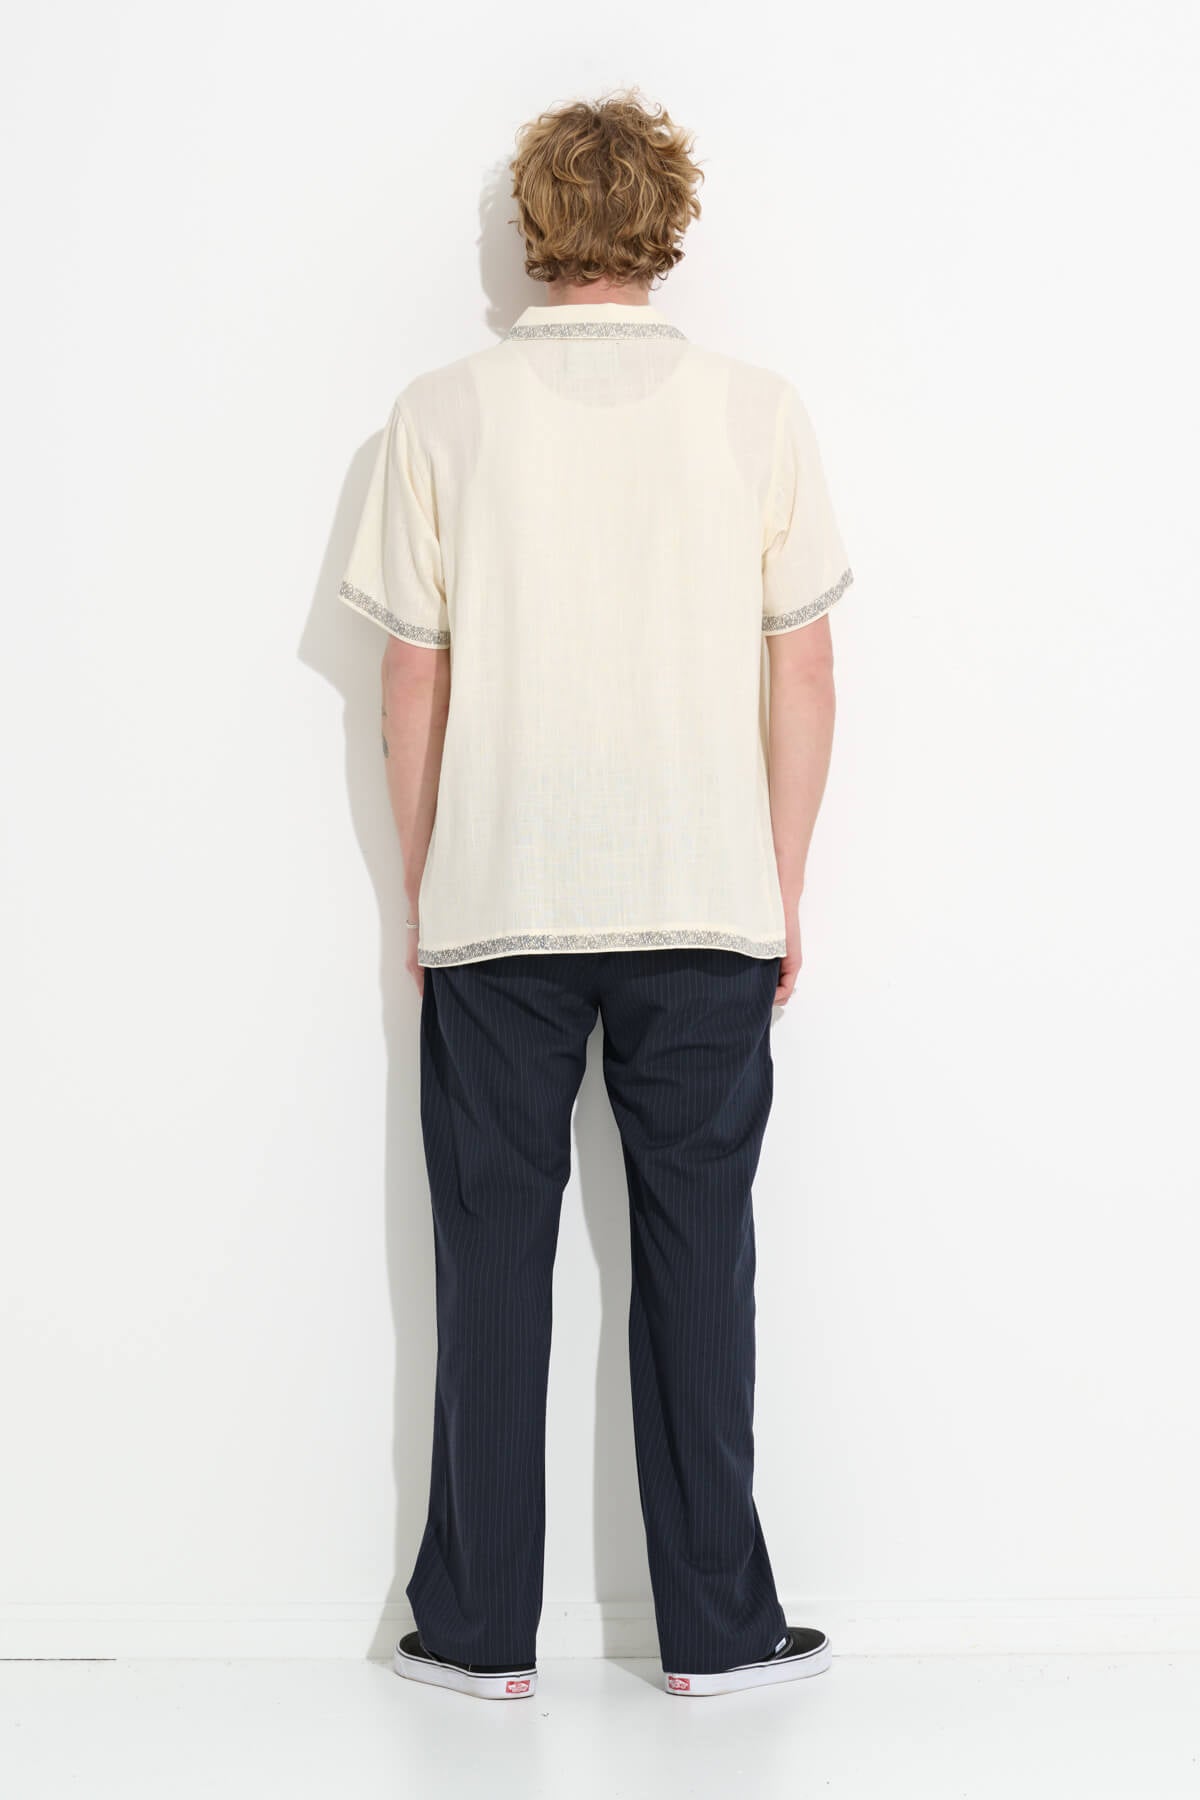 Misfit Shapes - Pandaan Linen SS Shirt - Natural